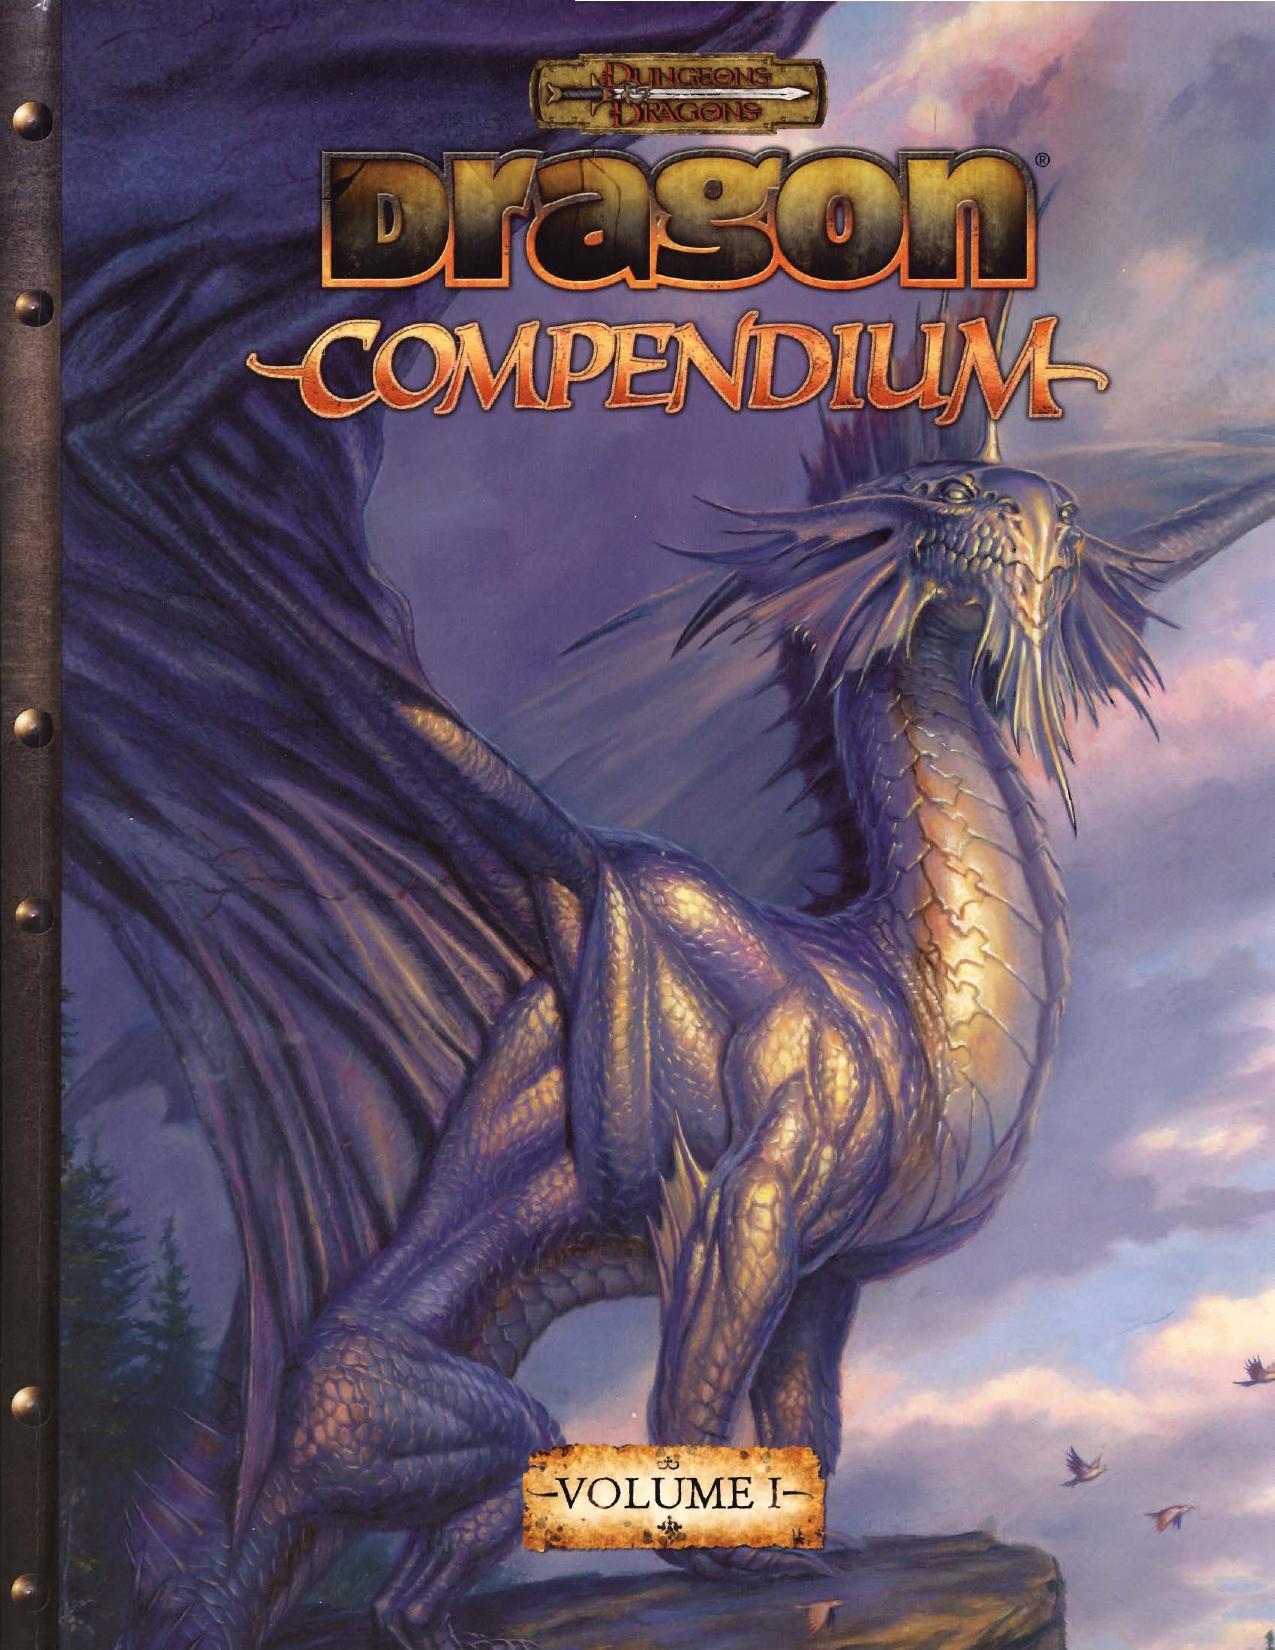 Dragon 'Magazine' Compendium